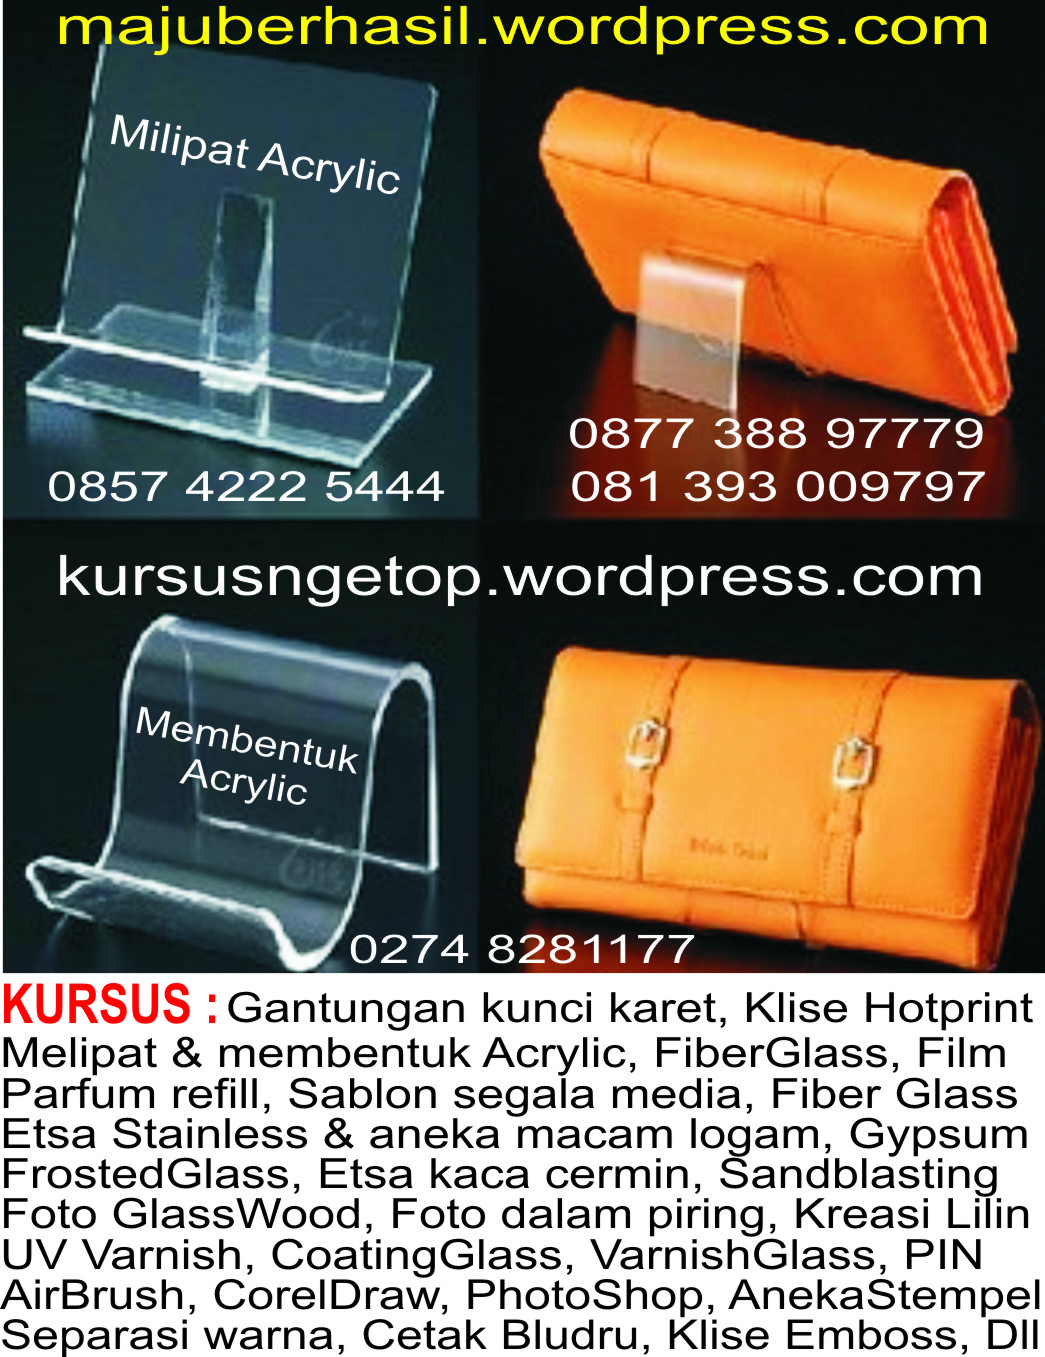 KURSUS ( kompaskoran.wordpress.com ) : Cetak Offset 